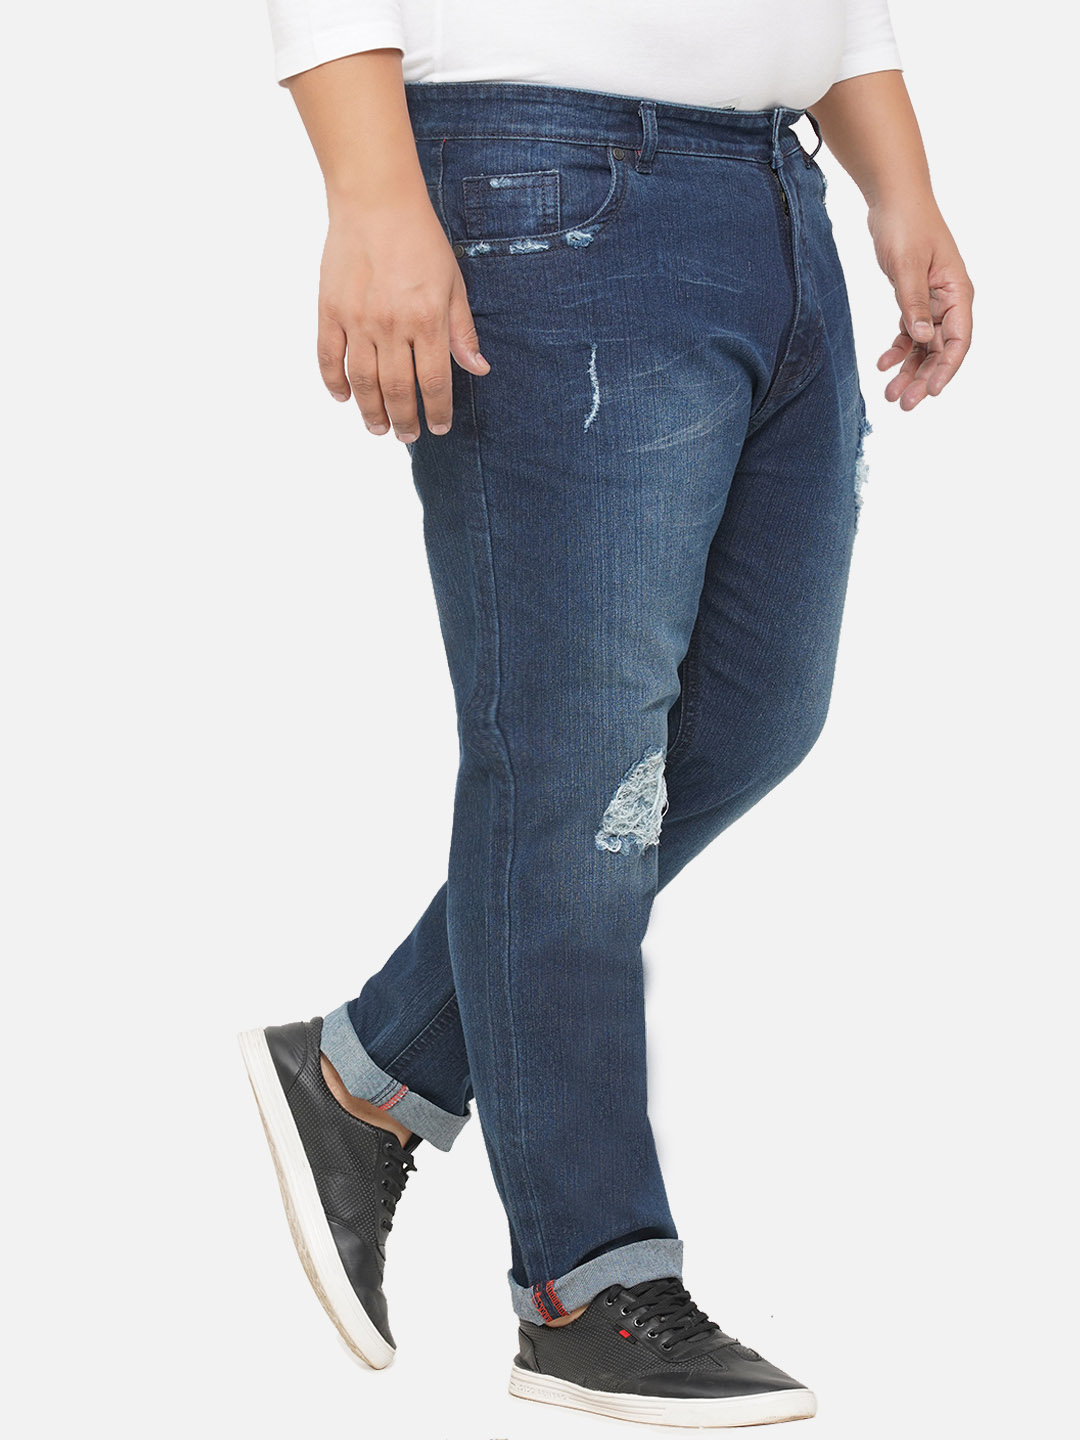 bottomwear/jeans/EJPJ25072/ejpj25072-2.jpg